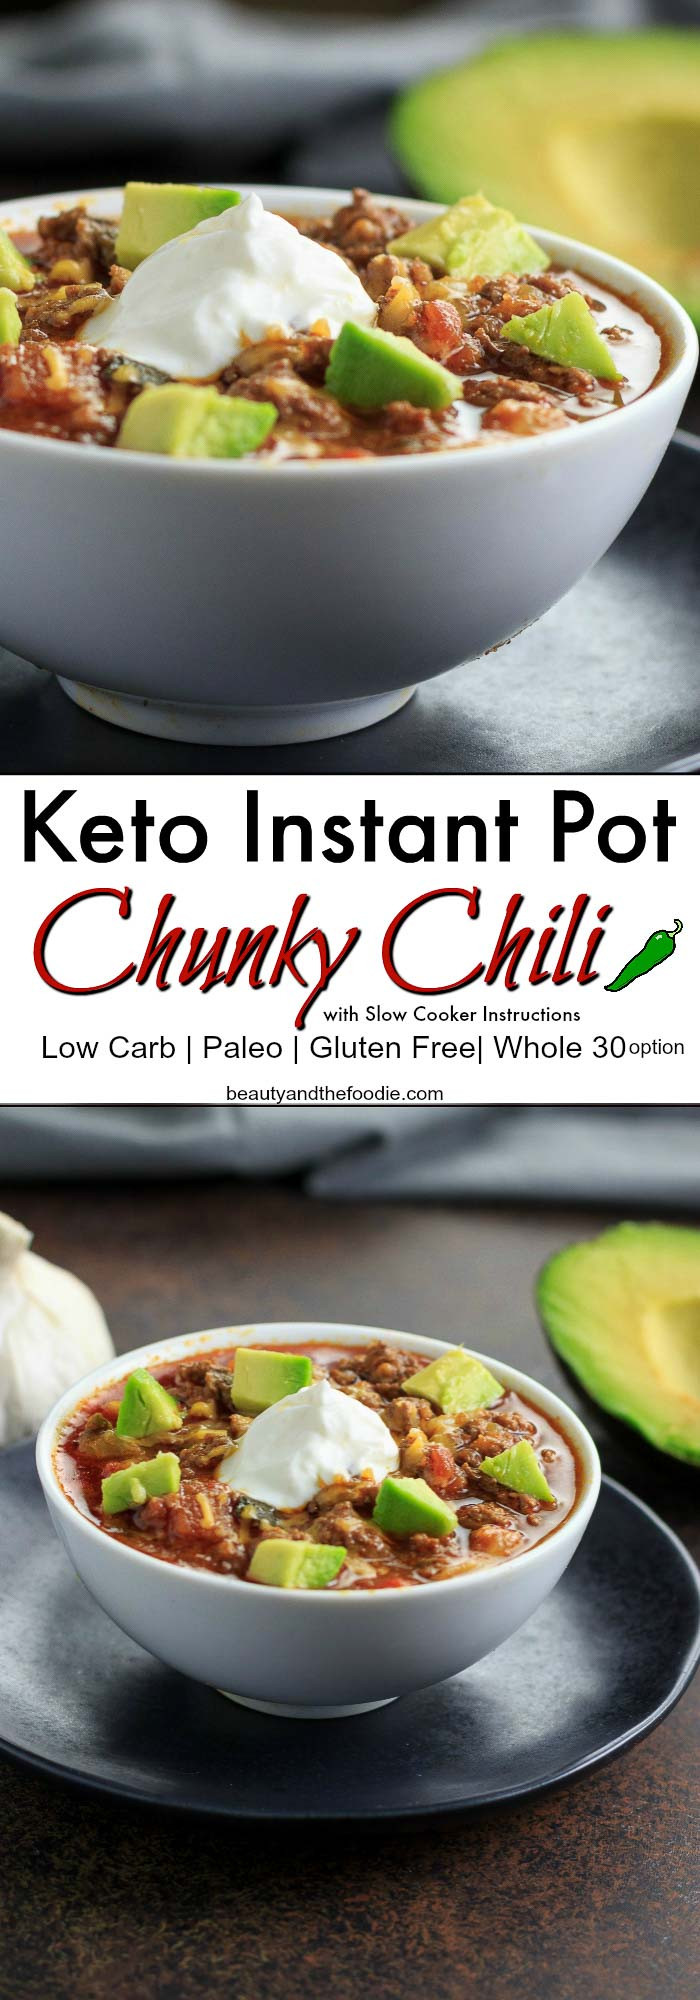 Instant Pot Keto Videos
 Keto Instant Pot Chunky Chili